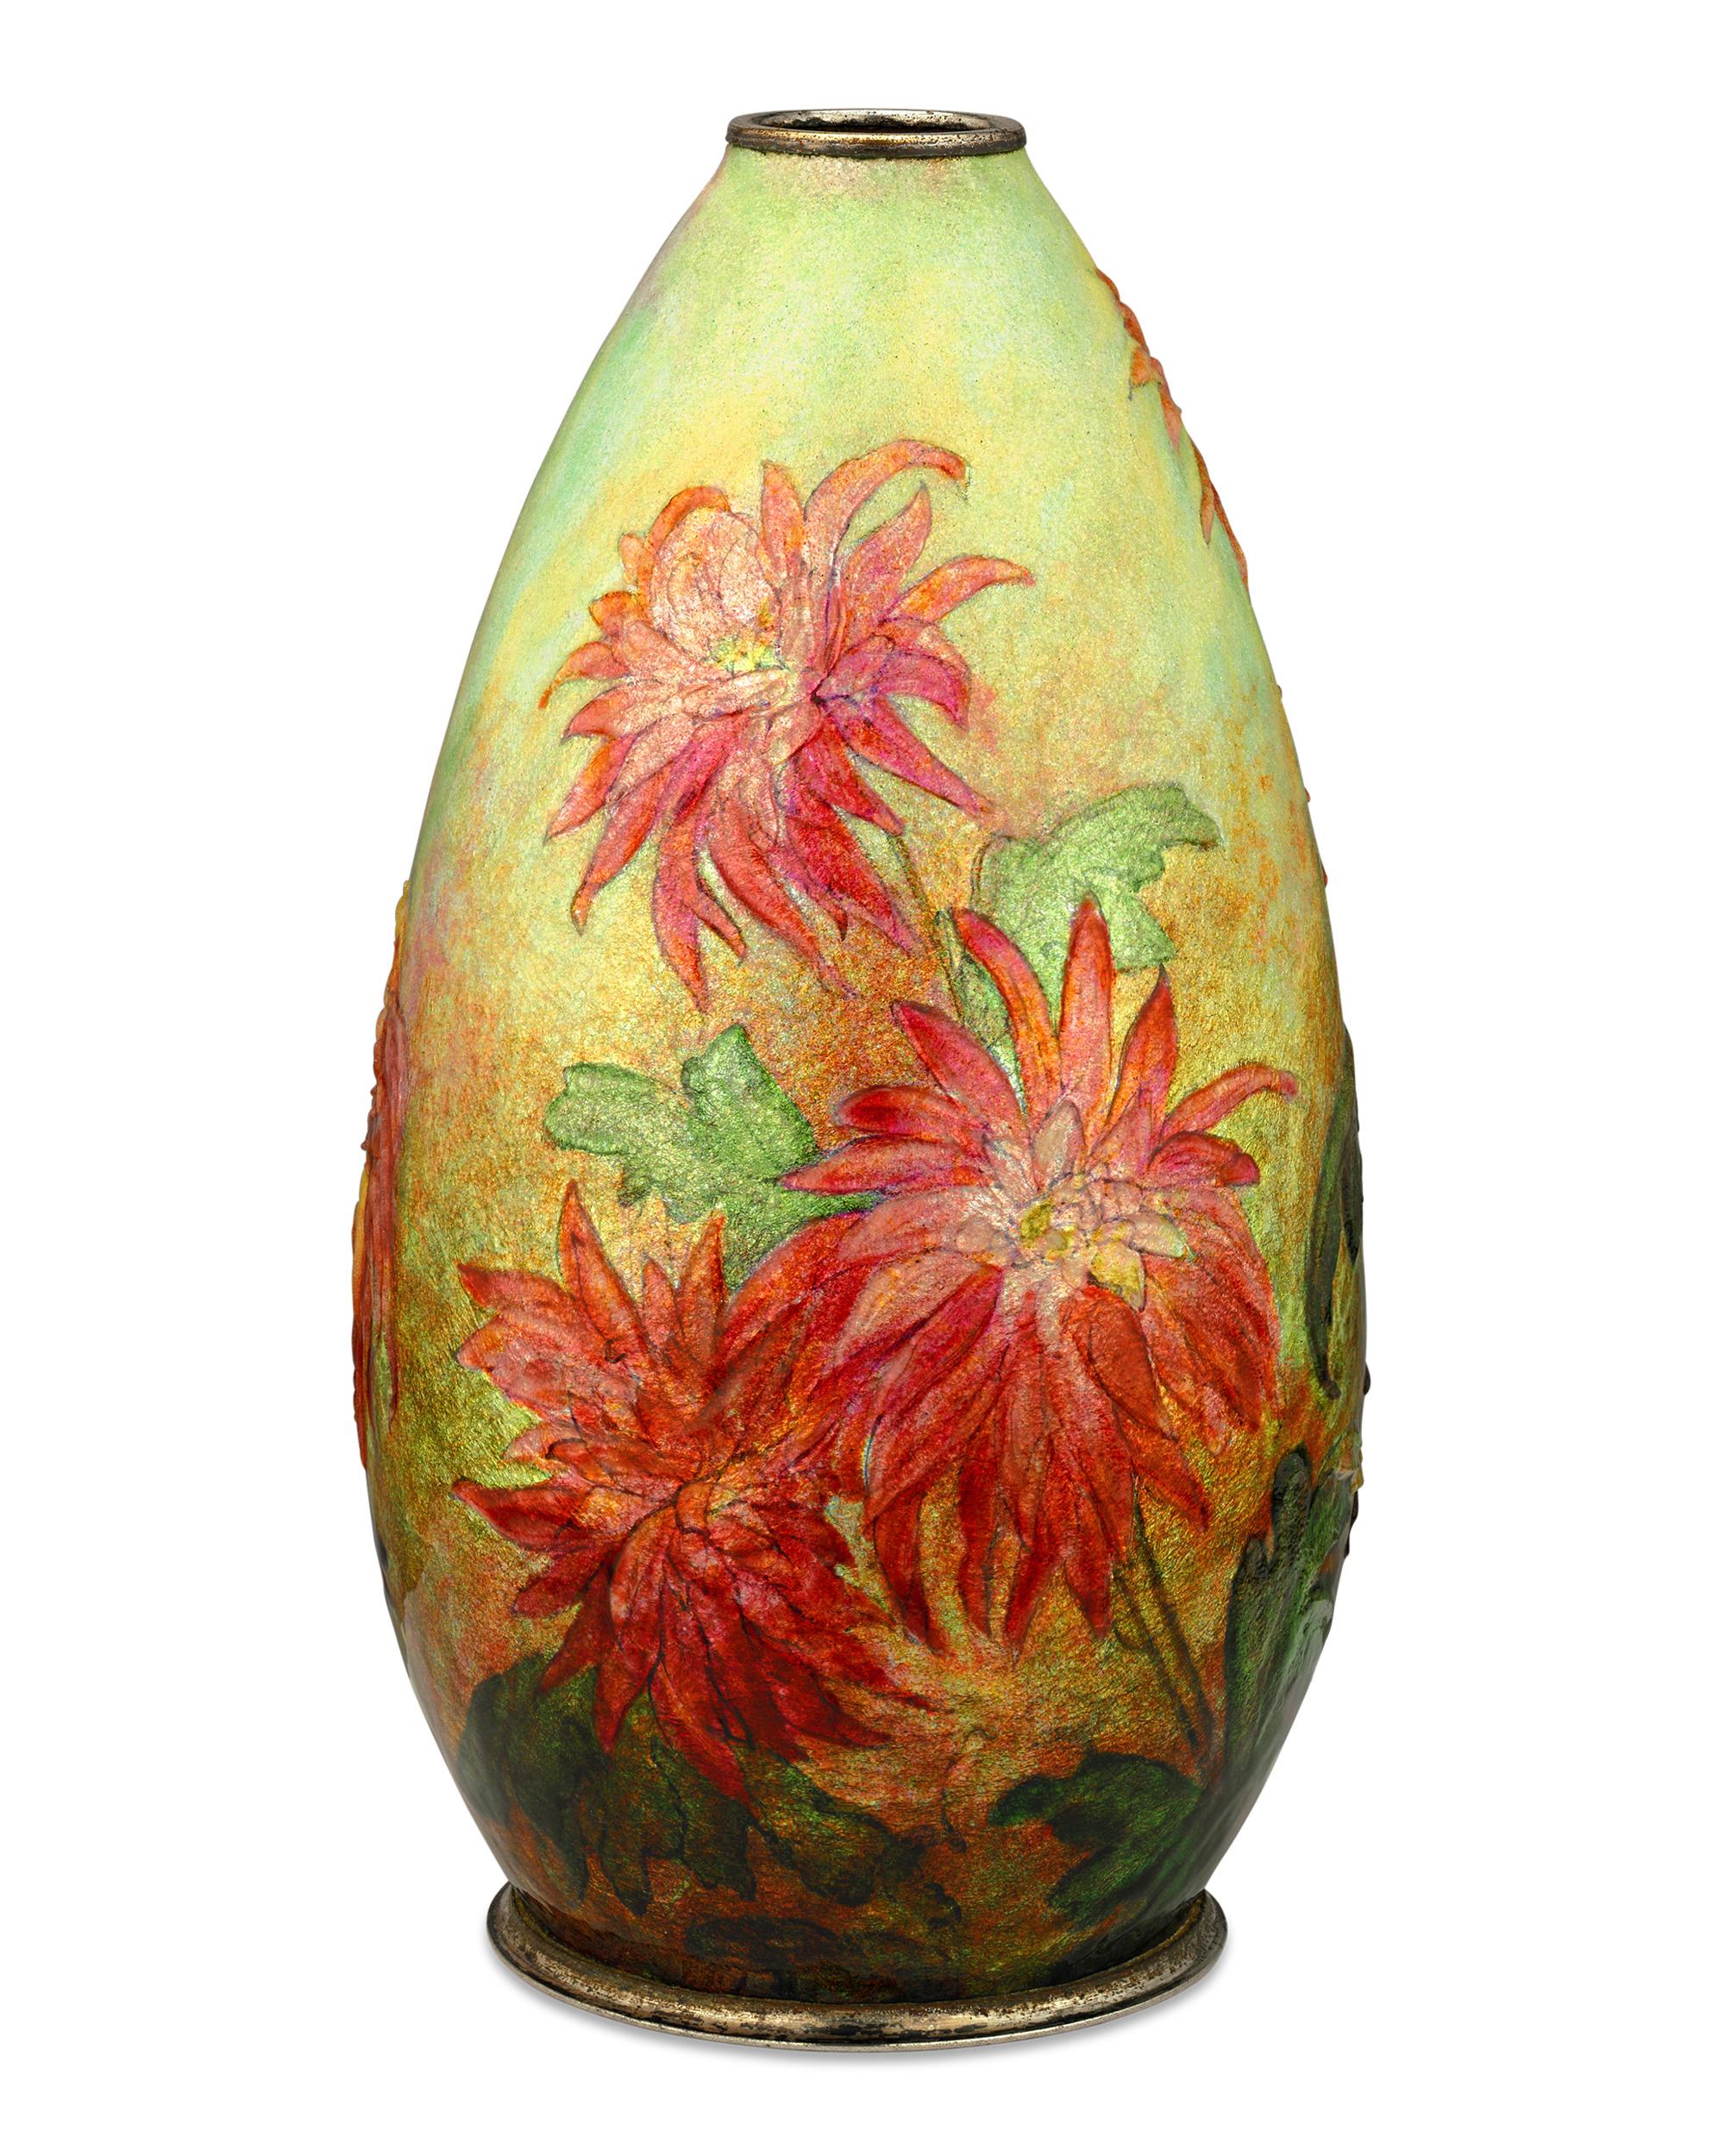 De délicates fleurs de chrysanthèmes orange s'épanouissent dans ce vase émaillé de Camille Fauré. Réalisée selon la technique qui a fait sa renommée, la forme en cuivre du vase est recouverte de feuilles d'argent et d'émail richement coloré qui